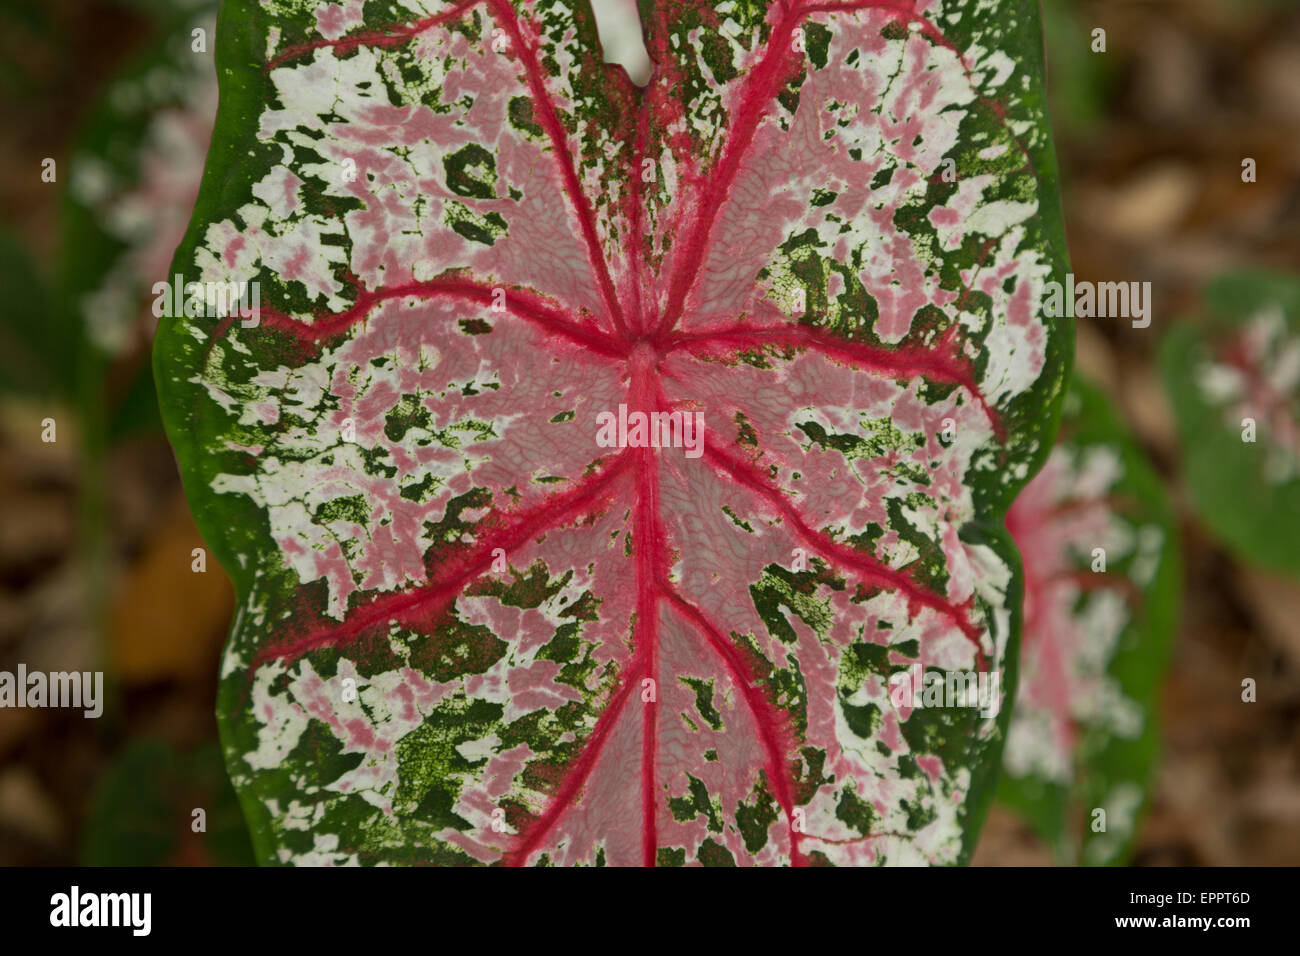 Ein Foto von Carolyn Whorton rosa Caladium oder rosa Schönheit Caladium hautnah. Bekannt für ihre sehr bunte Blätter. Stockfoto